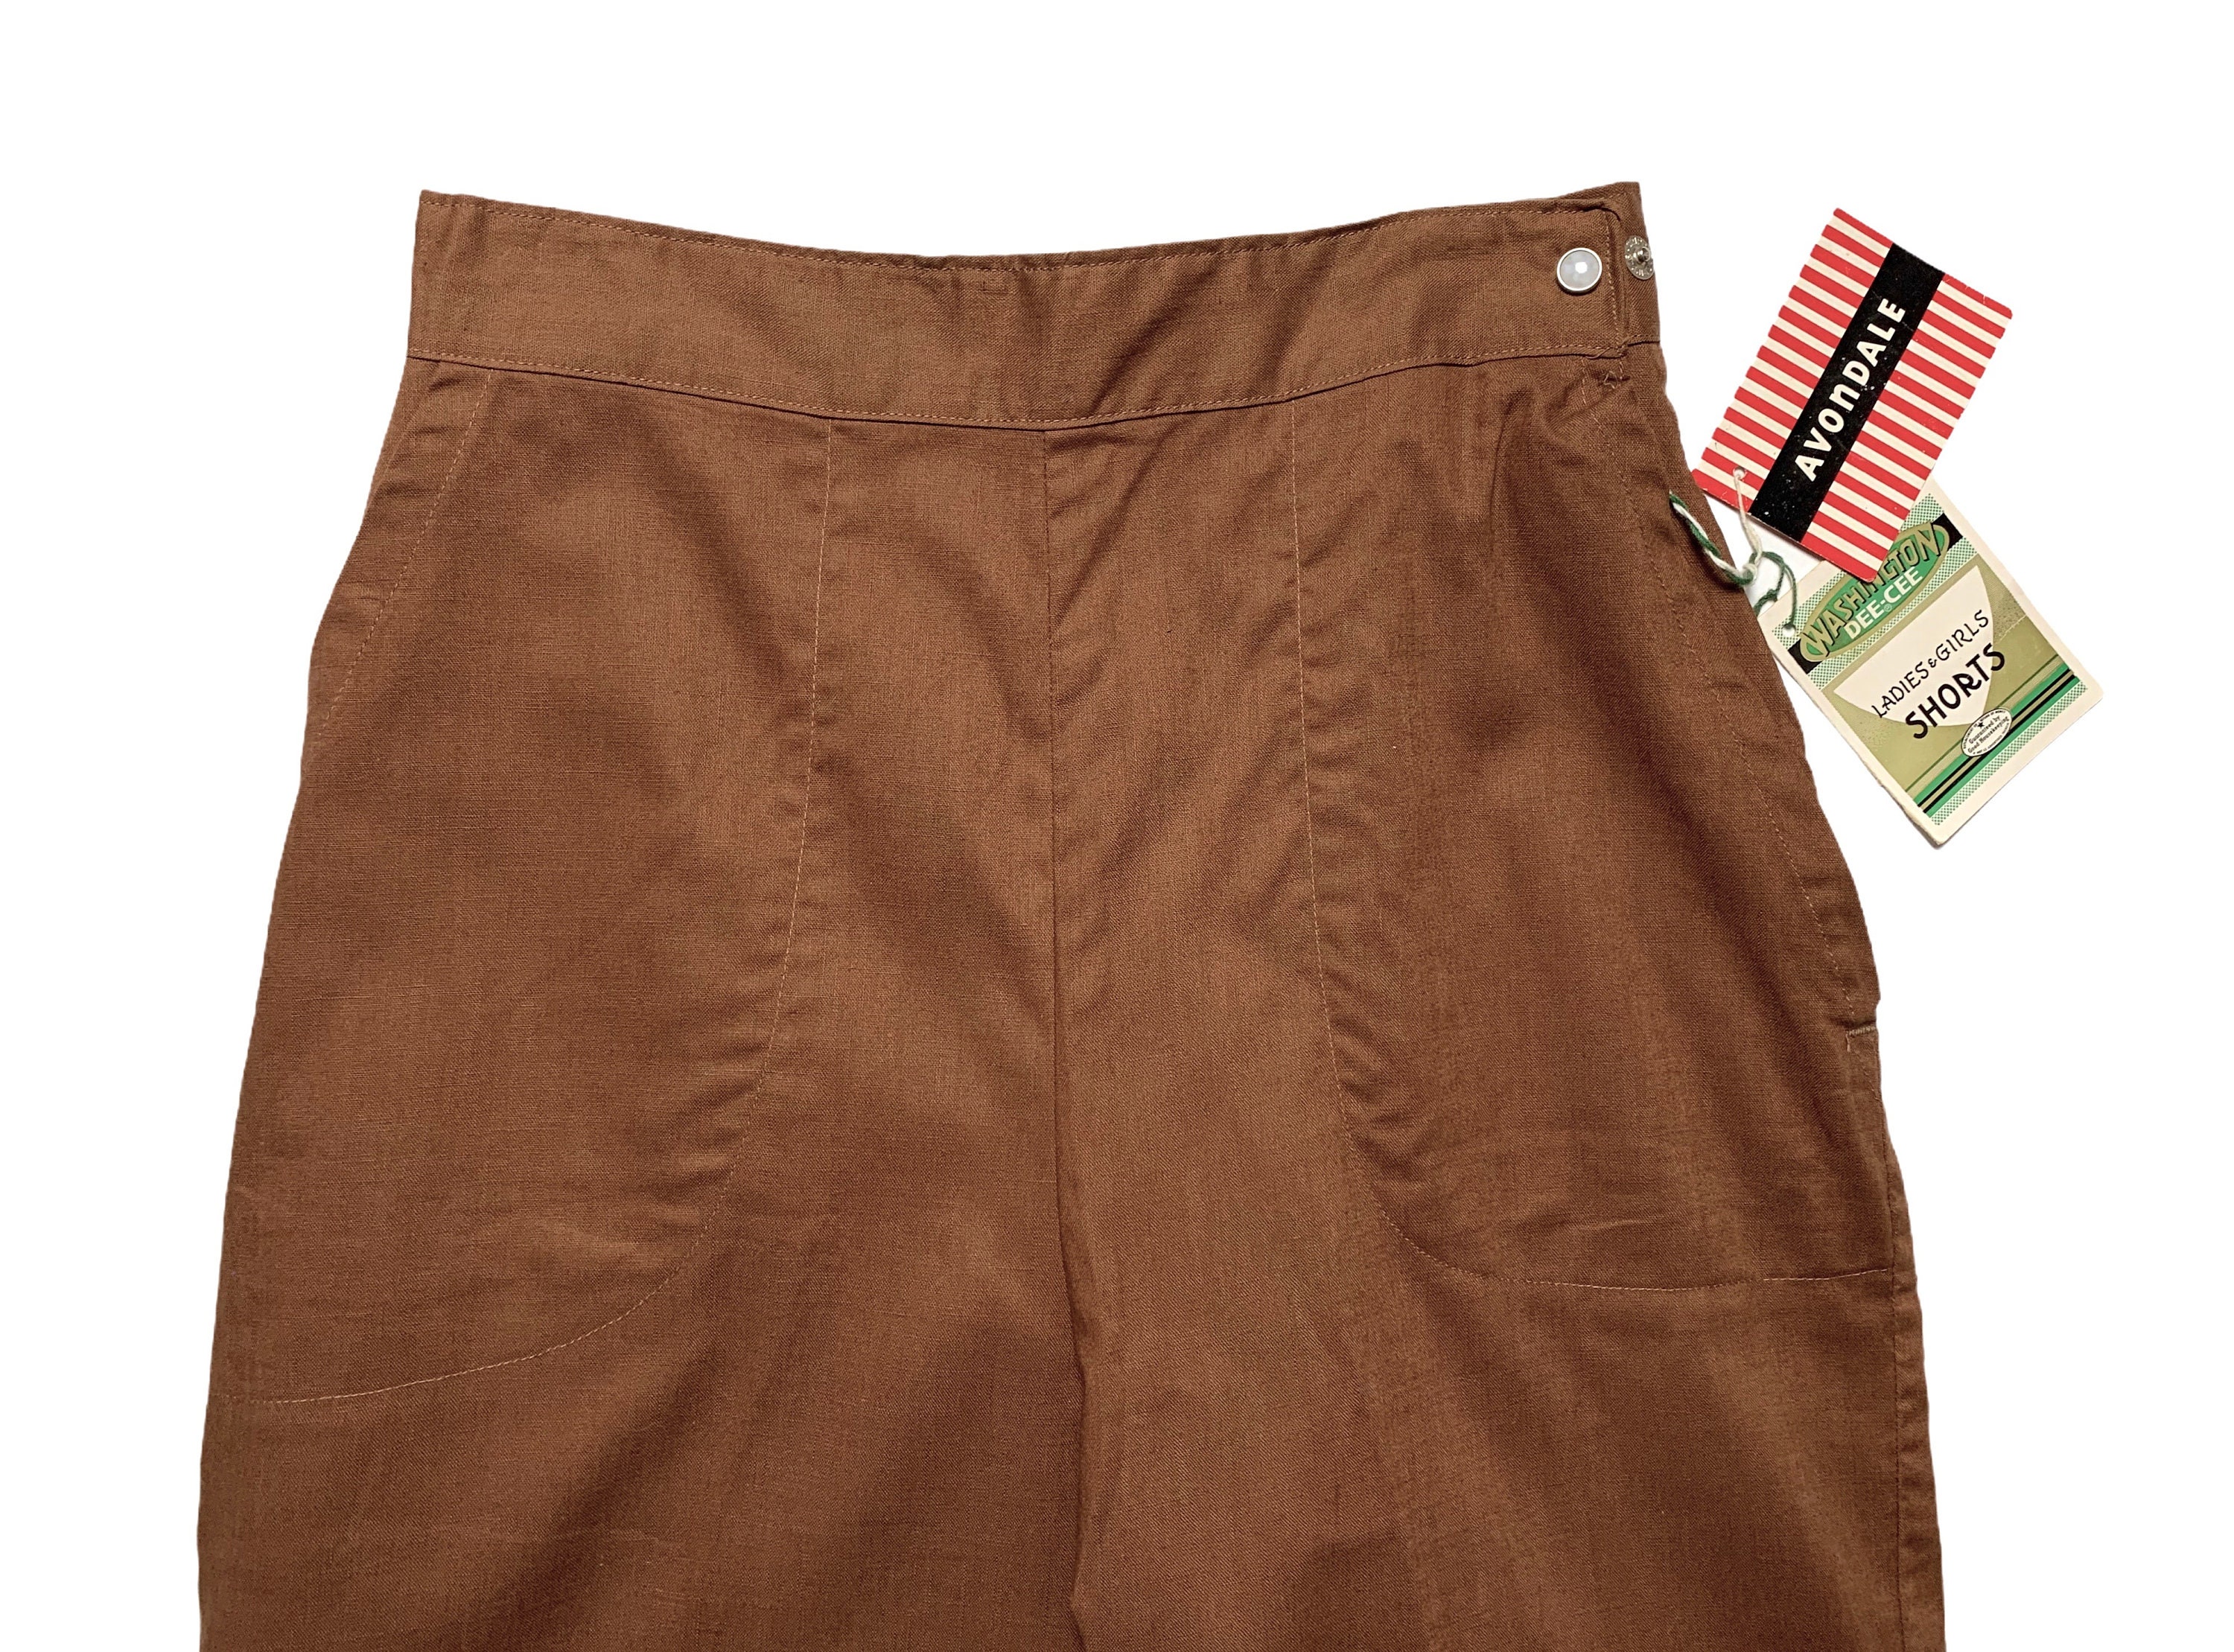 1950's or 1960's Men's Capri Shorts Deadstock w/ tags Kleding Herenkleding Shorts 